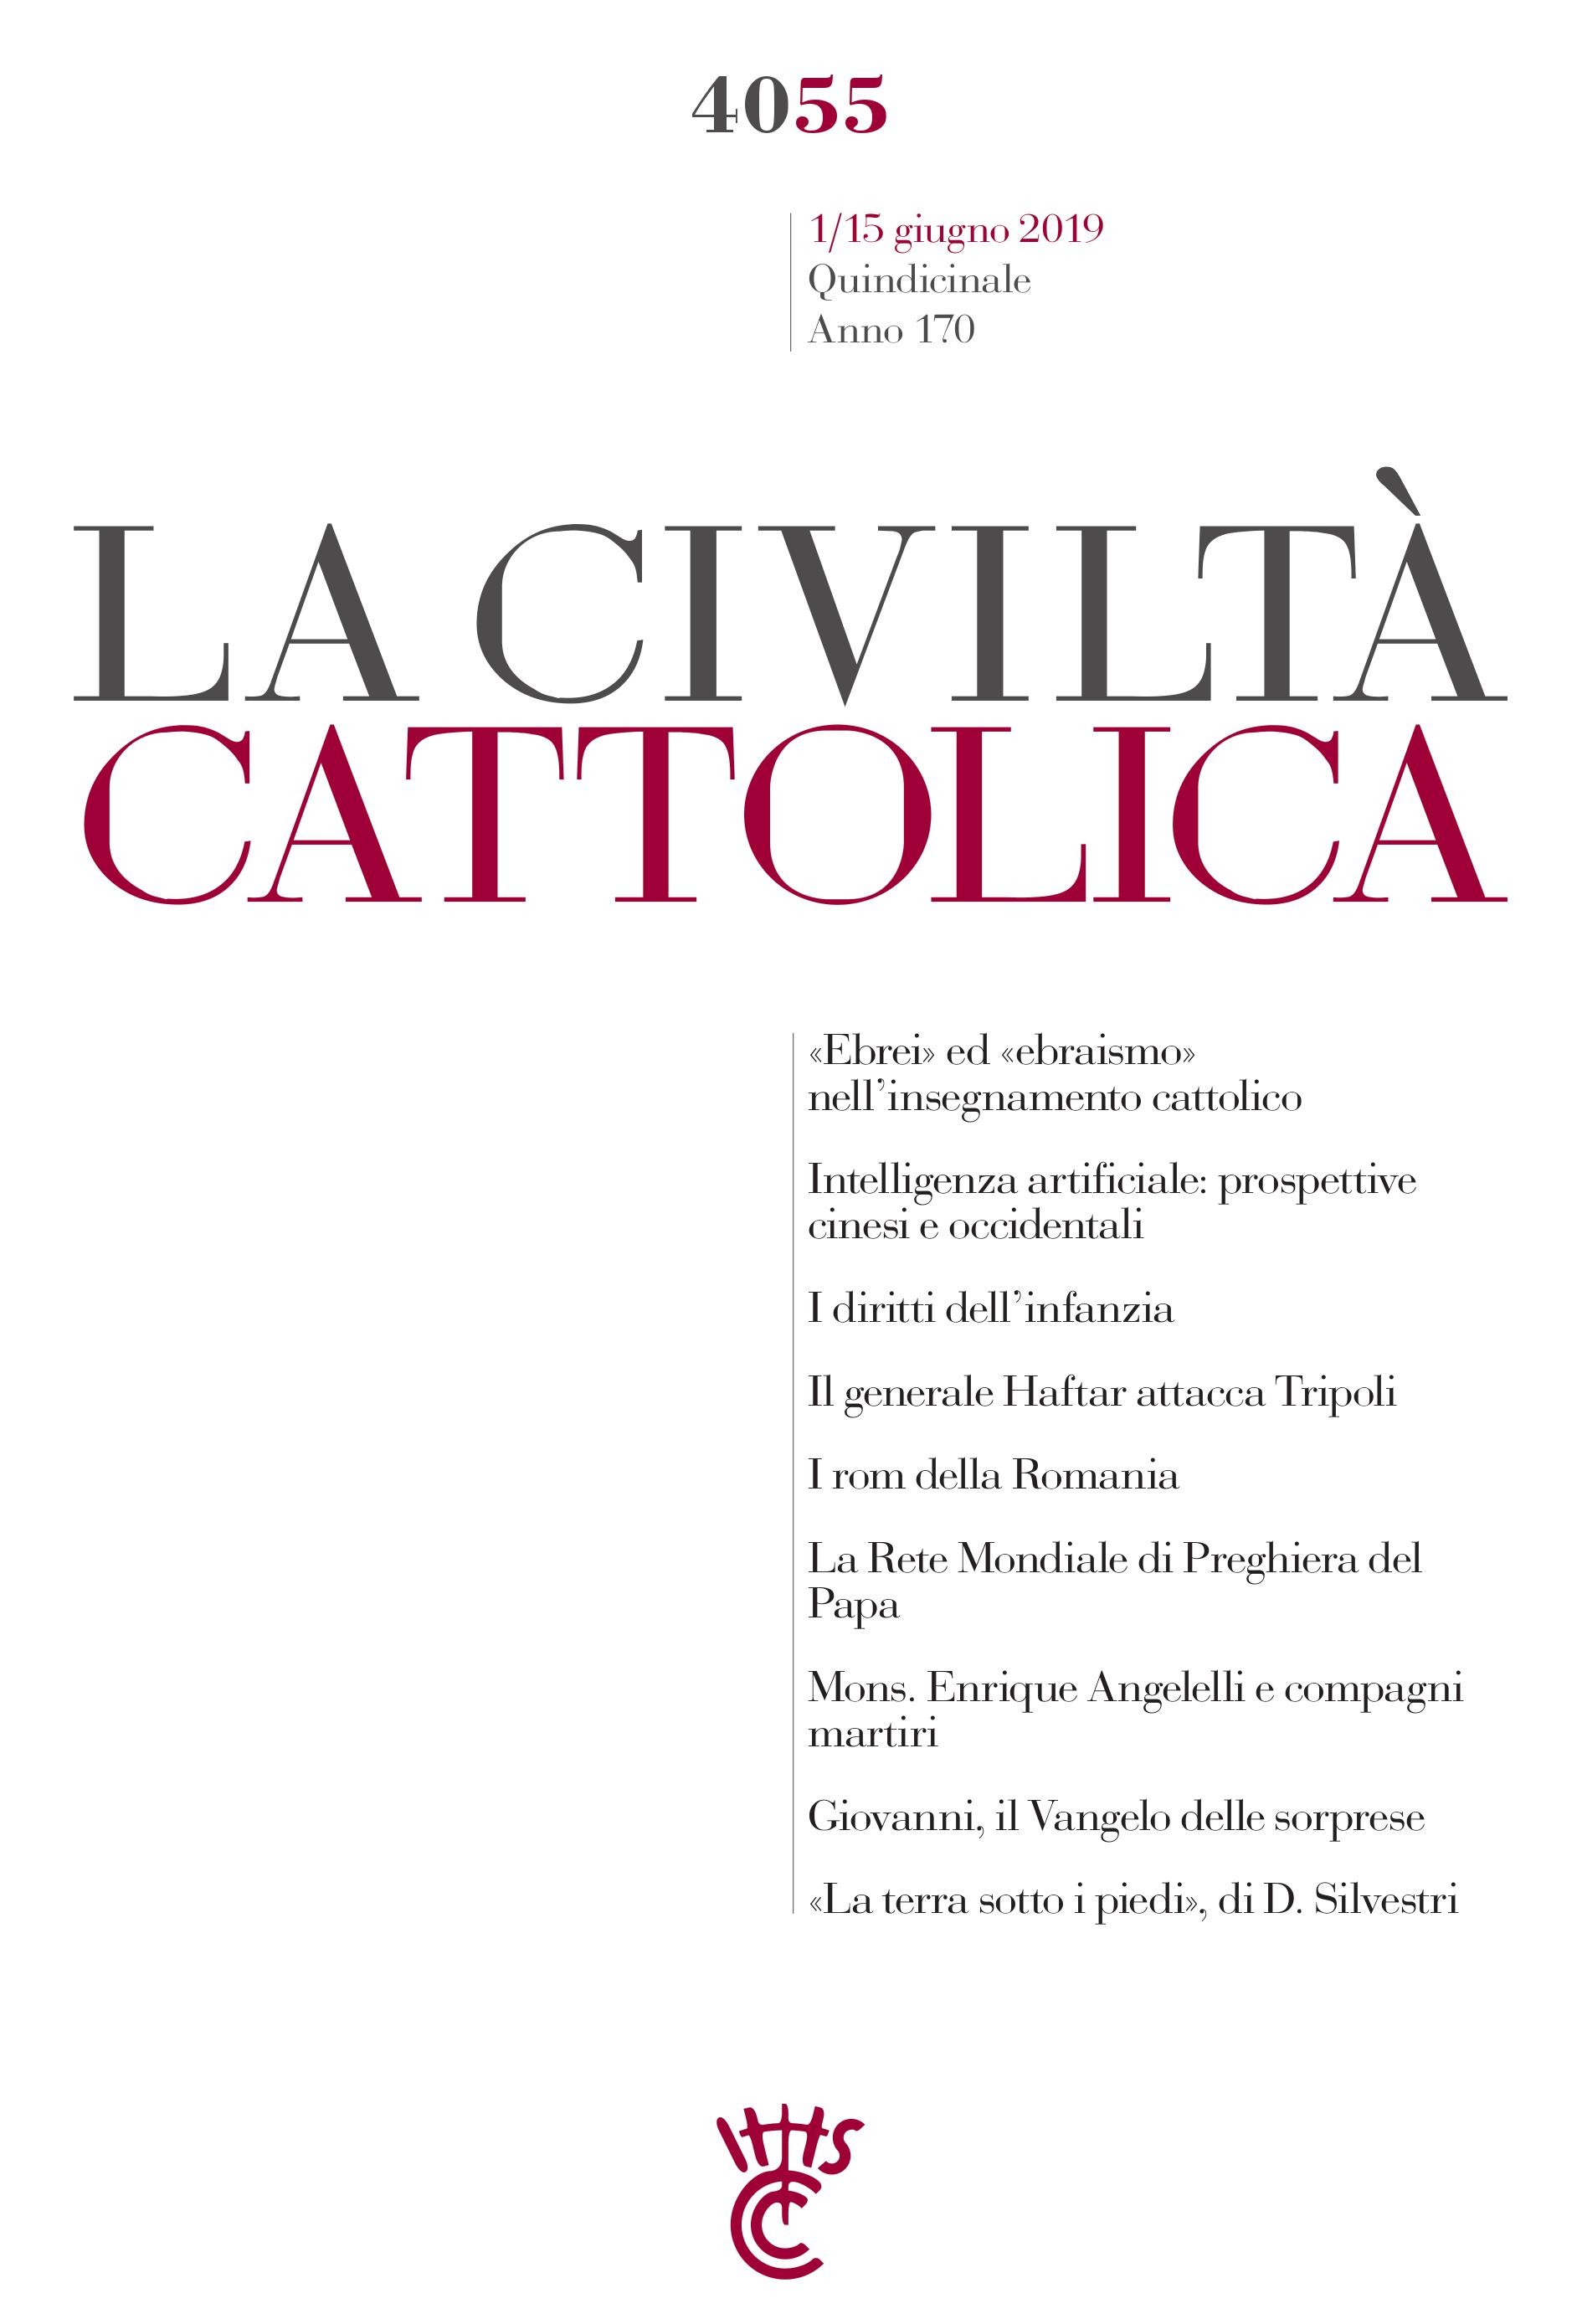 La Civiltà Cattolica n. 4055 - Librerie.coop